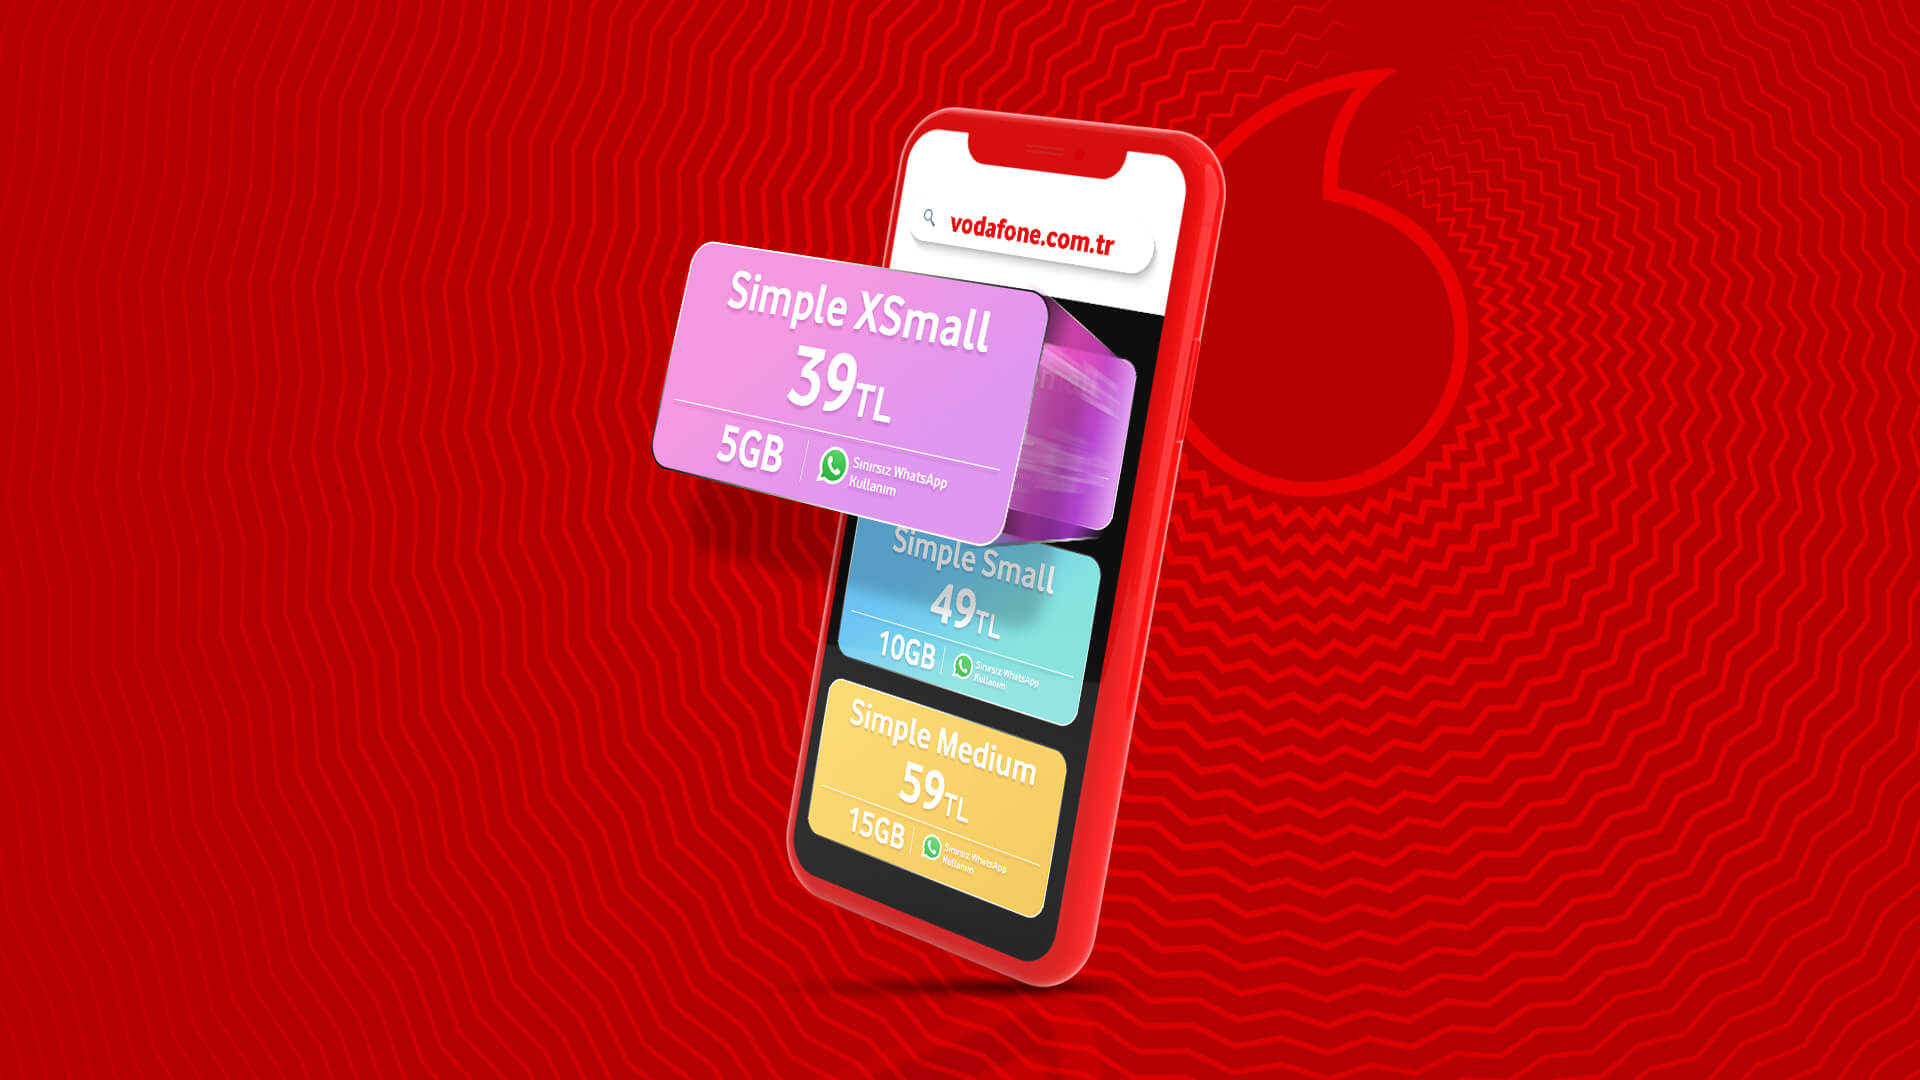 Vodafone'un yeni nesil tarifesi beğeni topladı